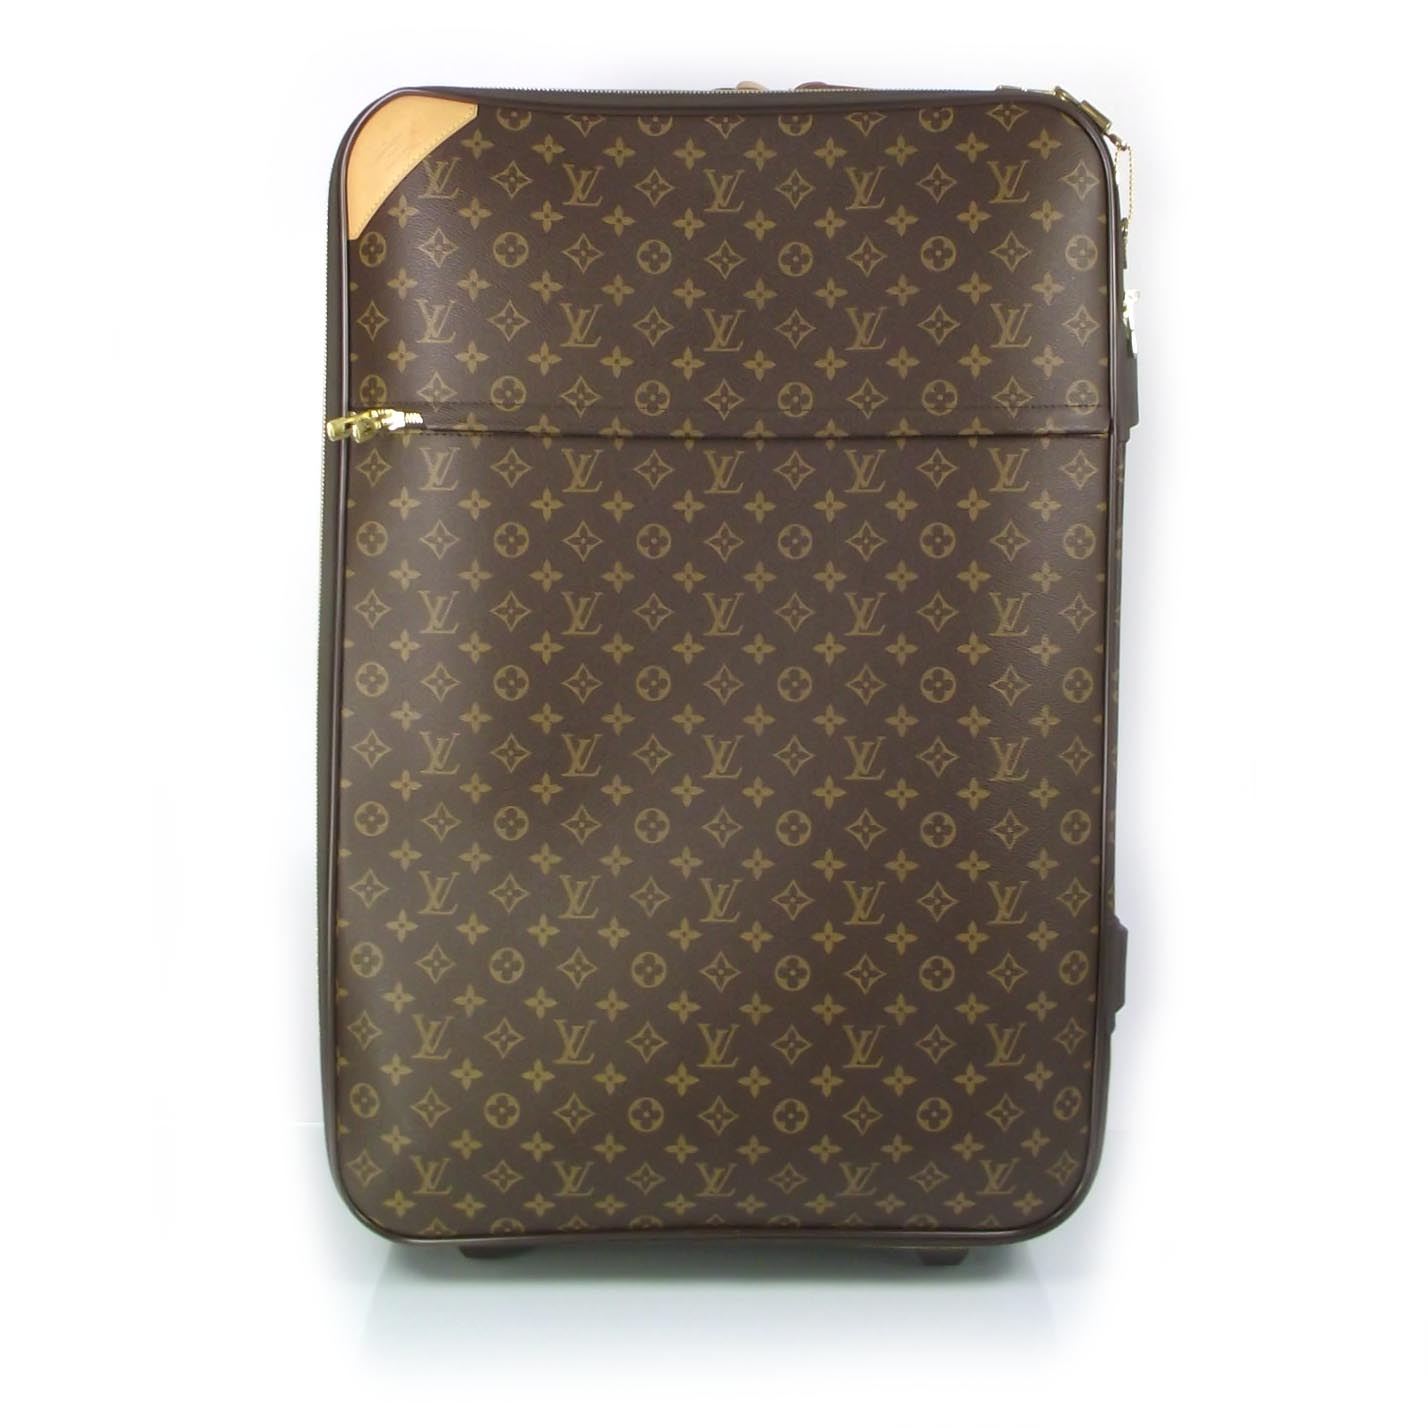 LOUIS VUITTON Monogram Pegase 70 Rolling Suitcase Luggage w Garment Bag 22843